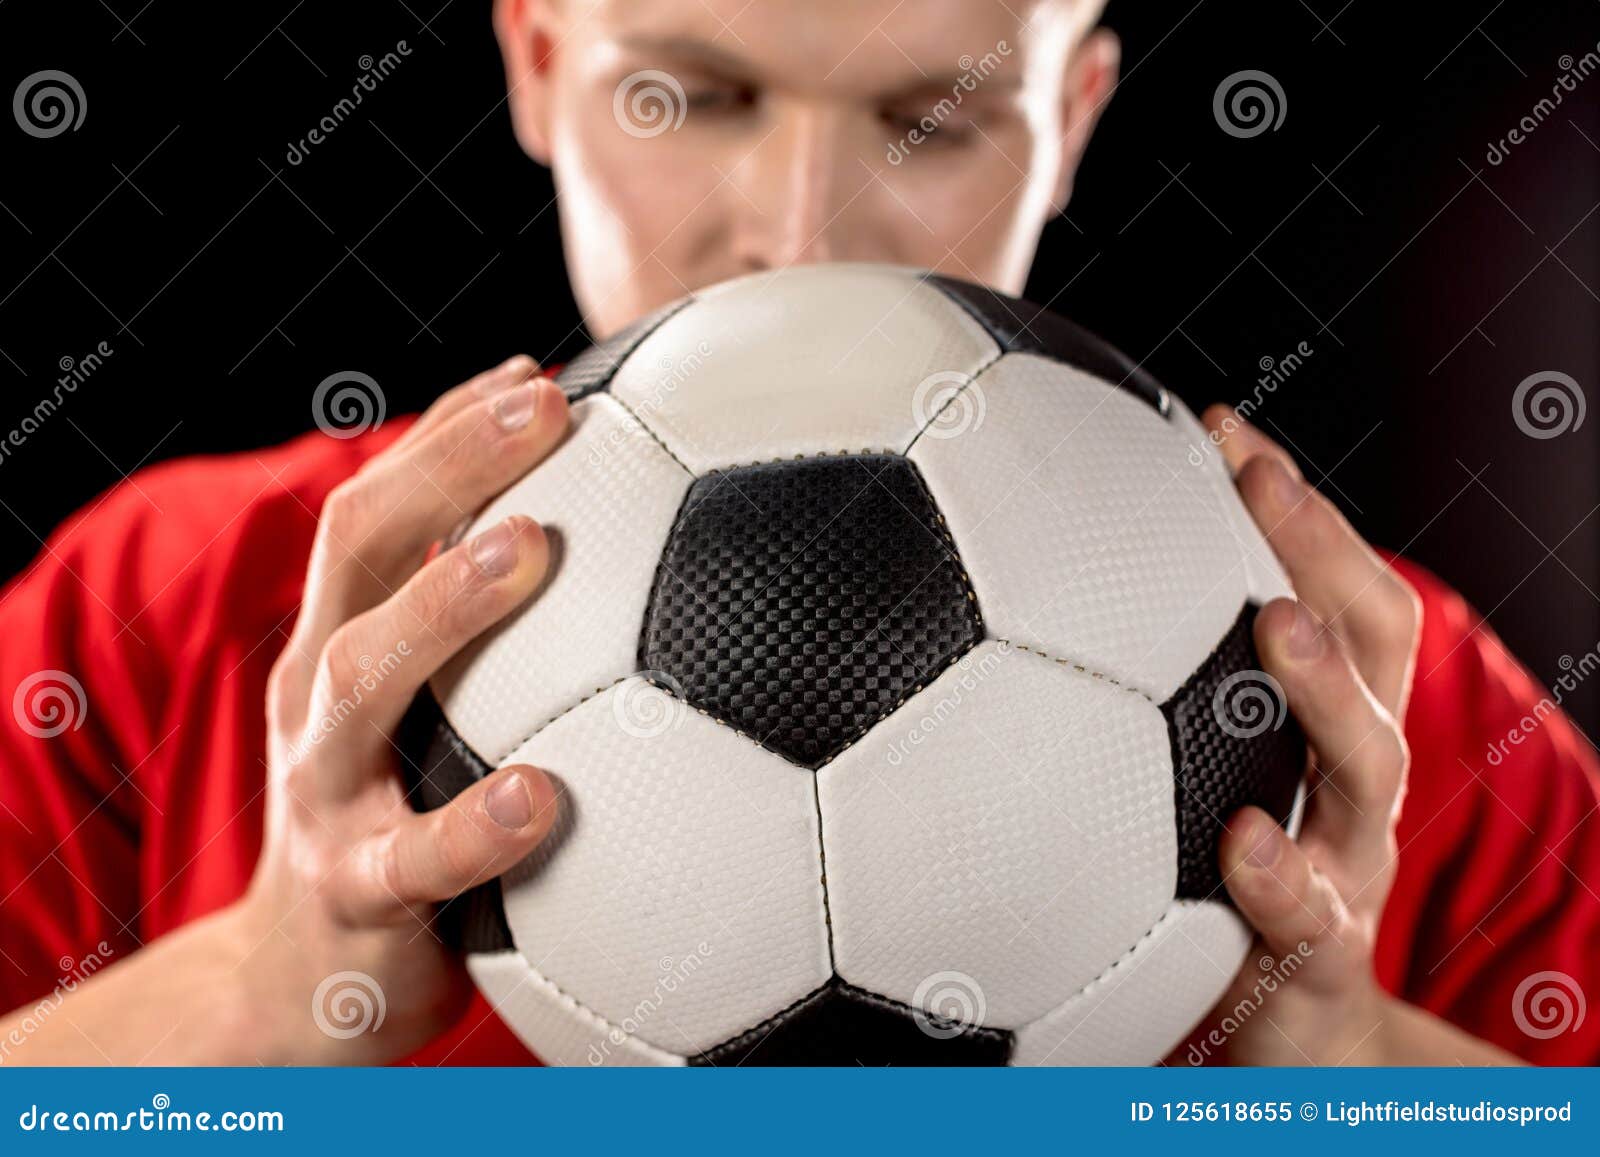 Голова мяч футбол. Мяч в руках. Футбольный мяч в руках. Футбол с мячом в руках. Рука держит мяч.